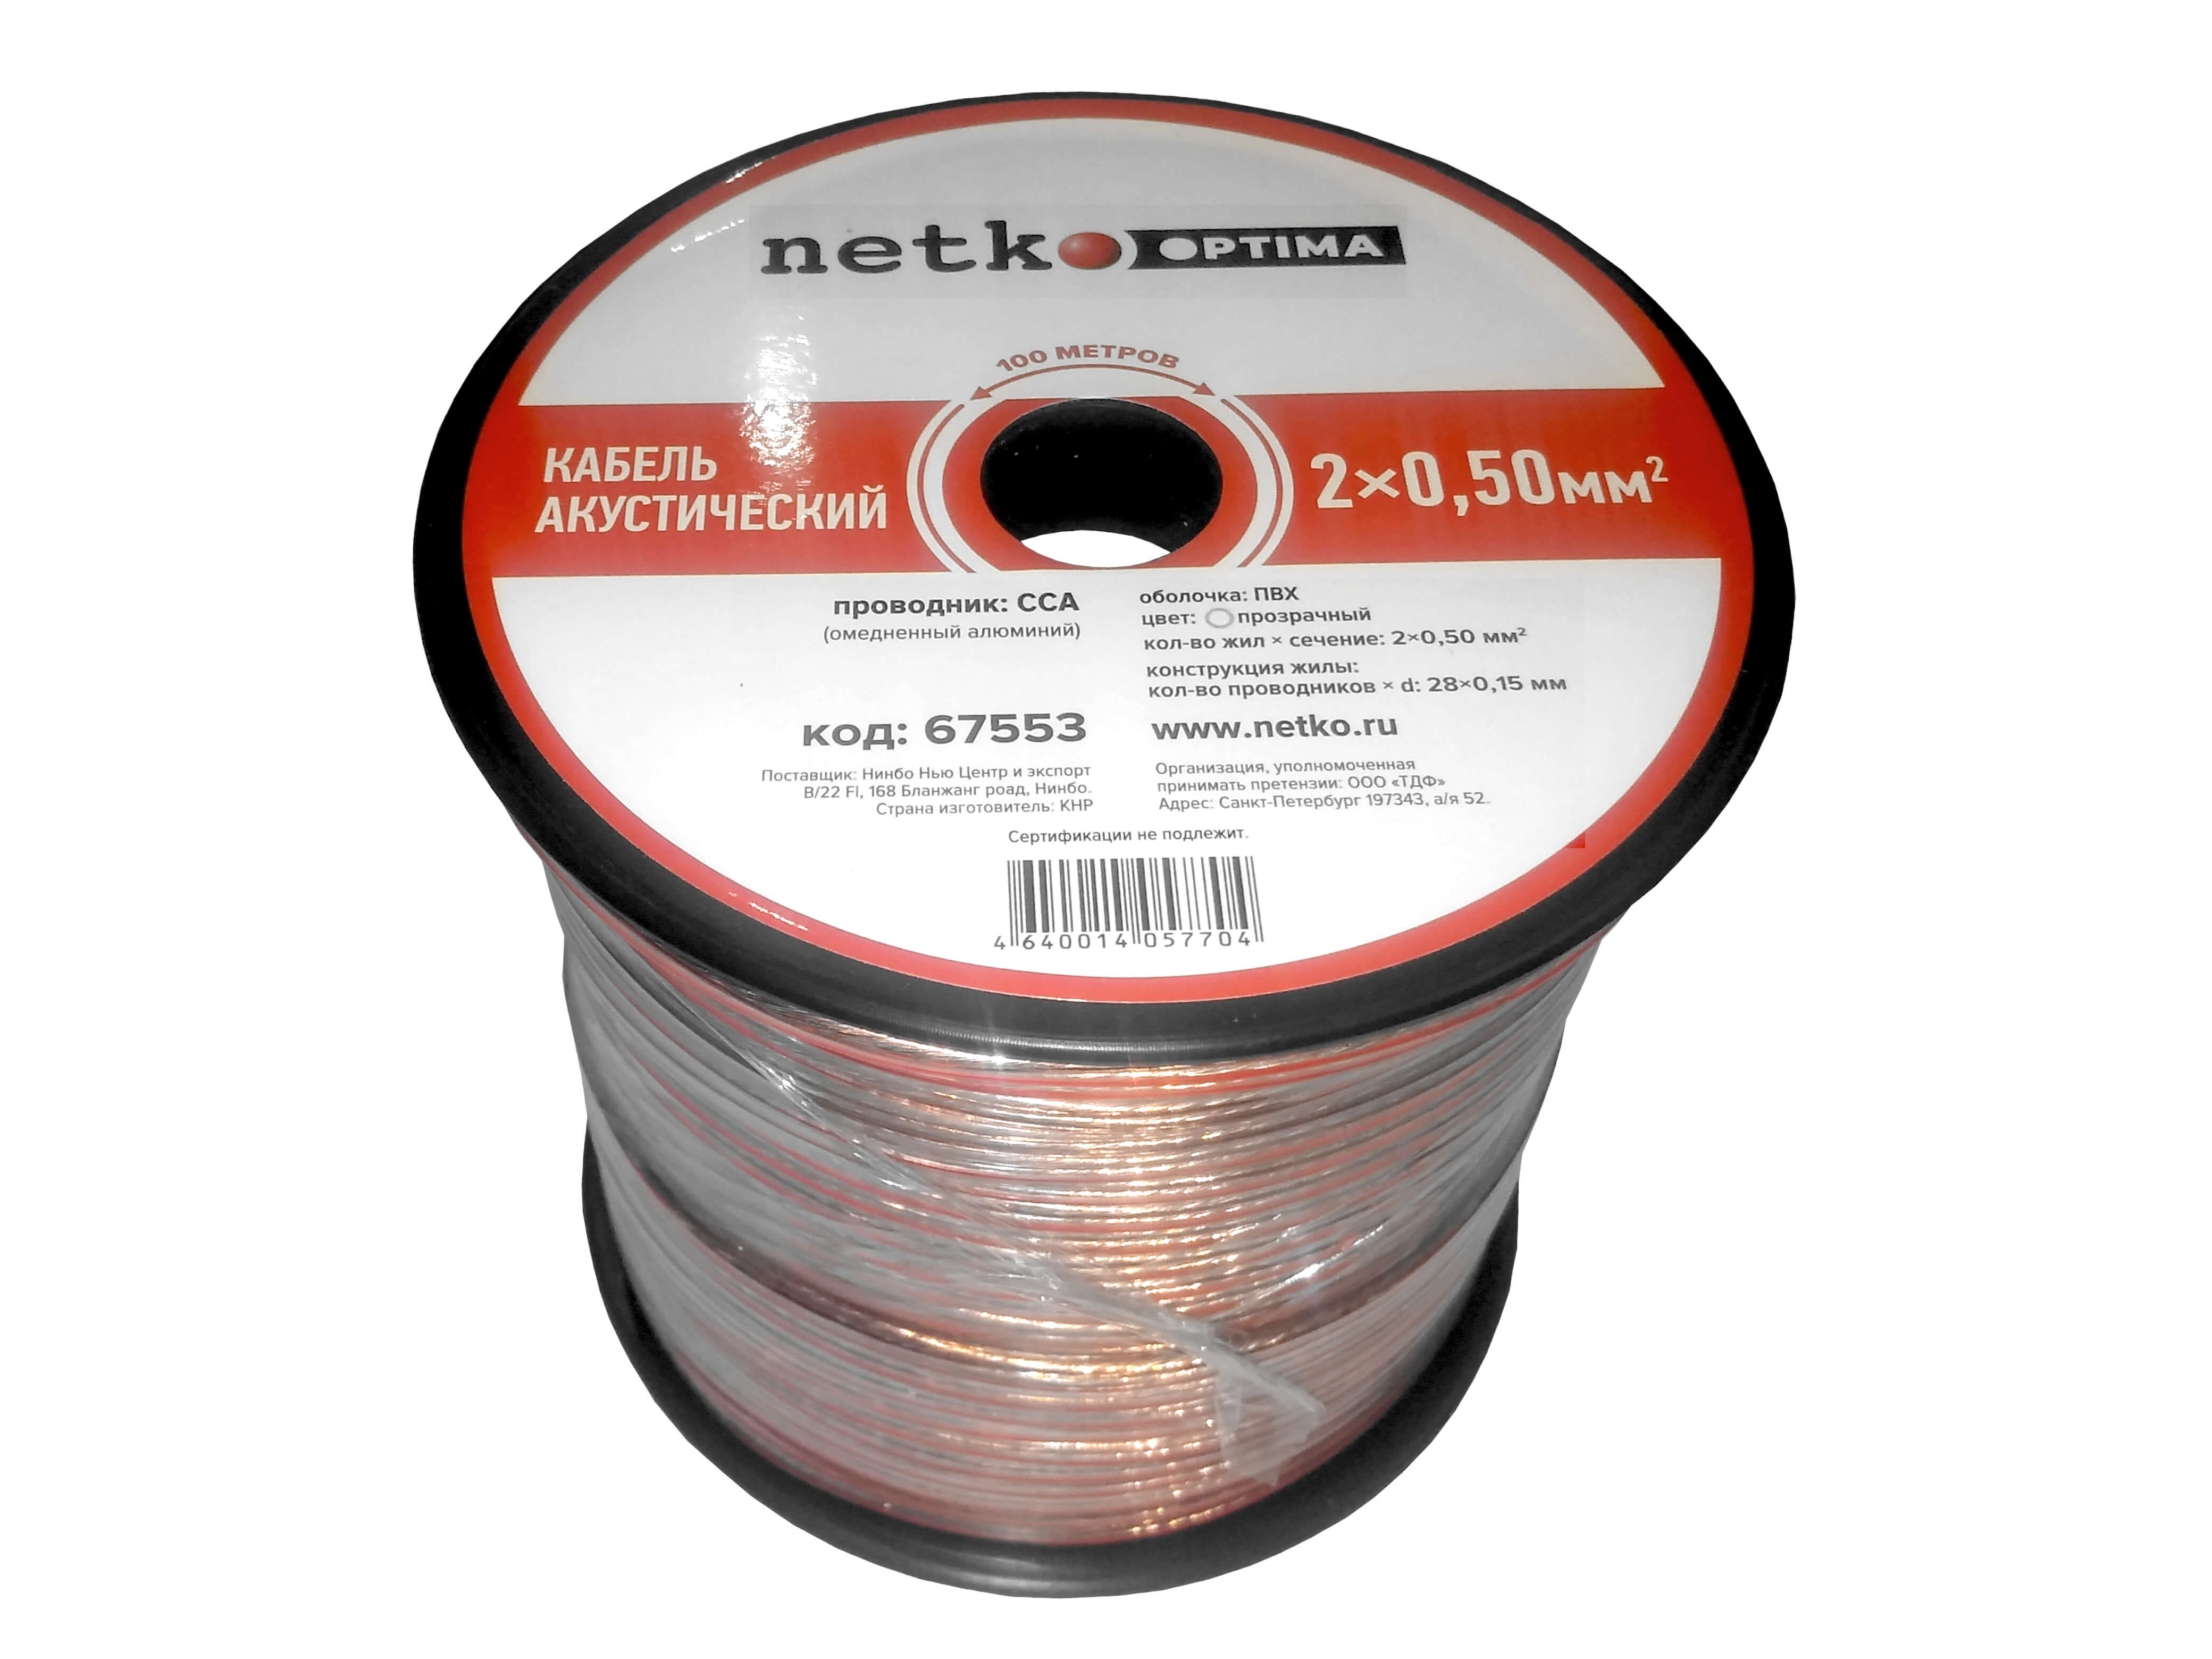 Акустический кабель NETKO N.050.ACC.67553.2X.10B, 2x0.5 мм², омедненный алюминий, 100 м, черный/красный (67553)